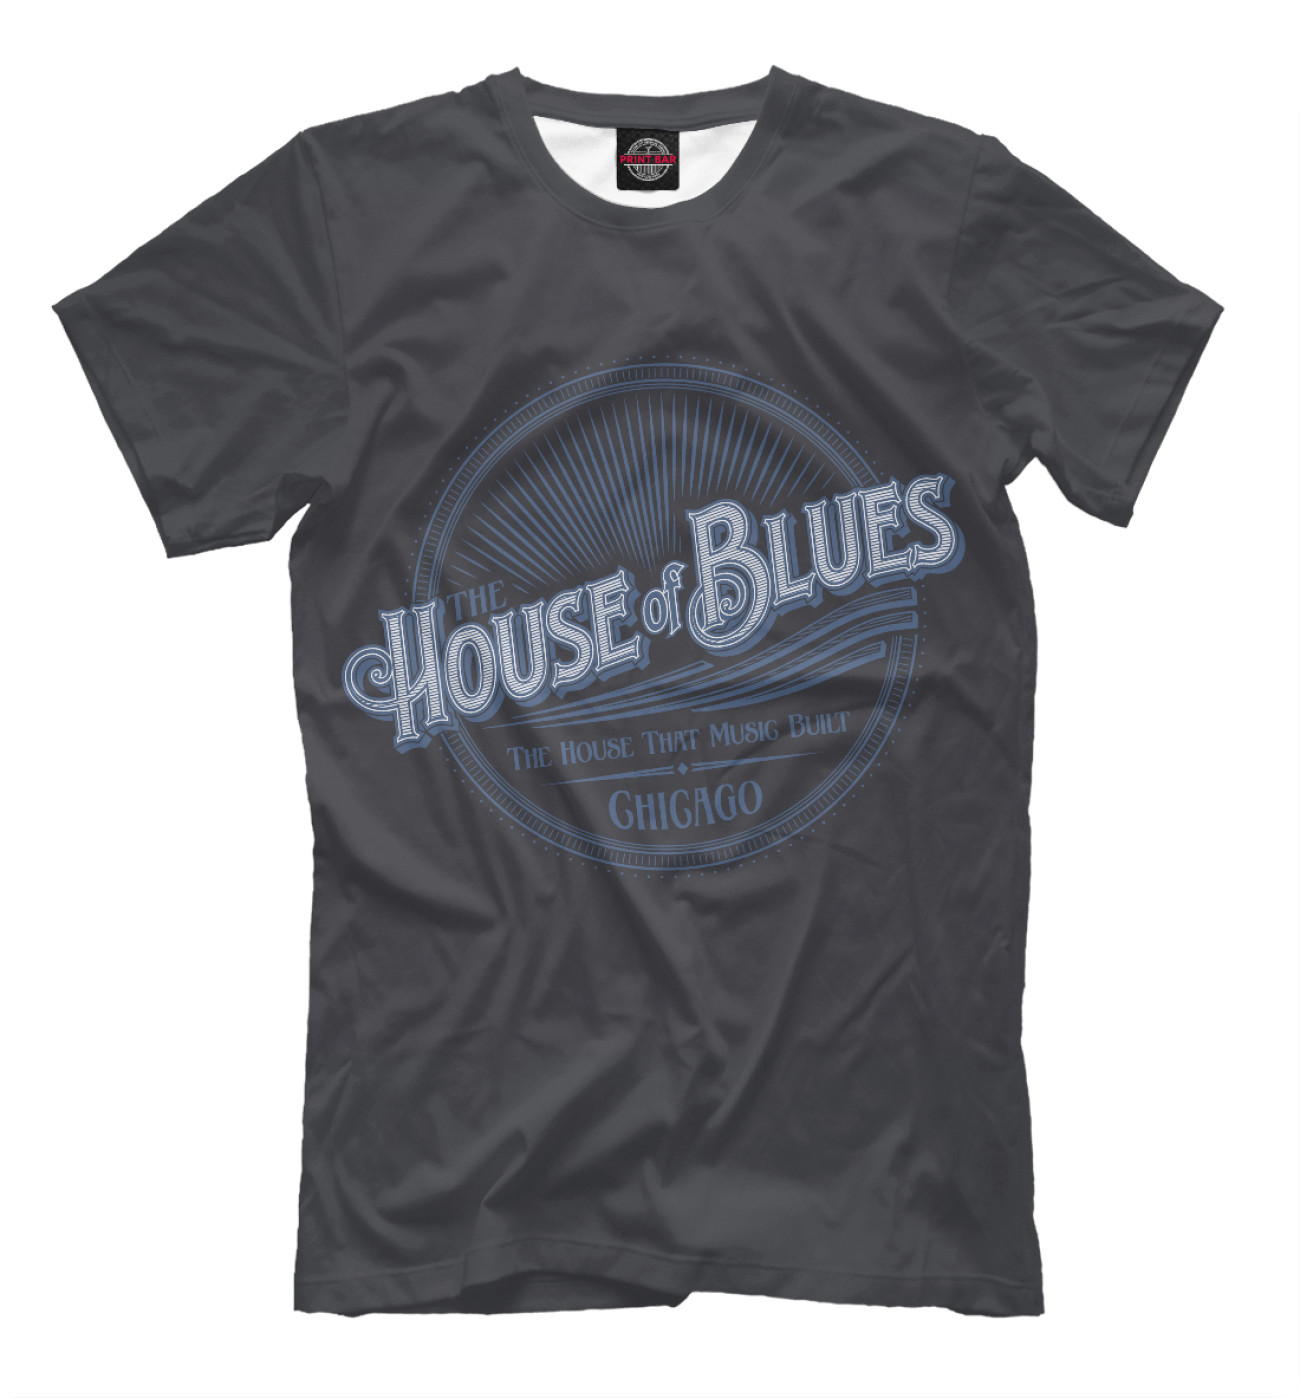 Мужская Футболка House of Blues, артикул: BLS-327109-fut-2